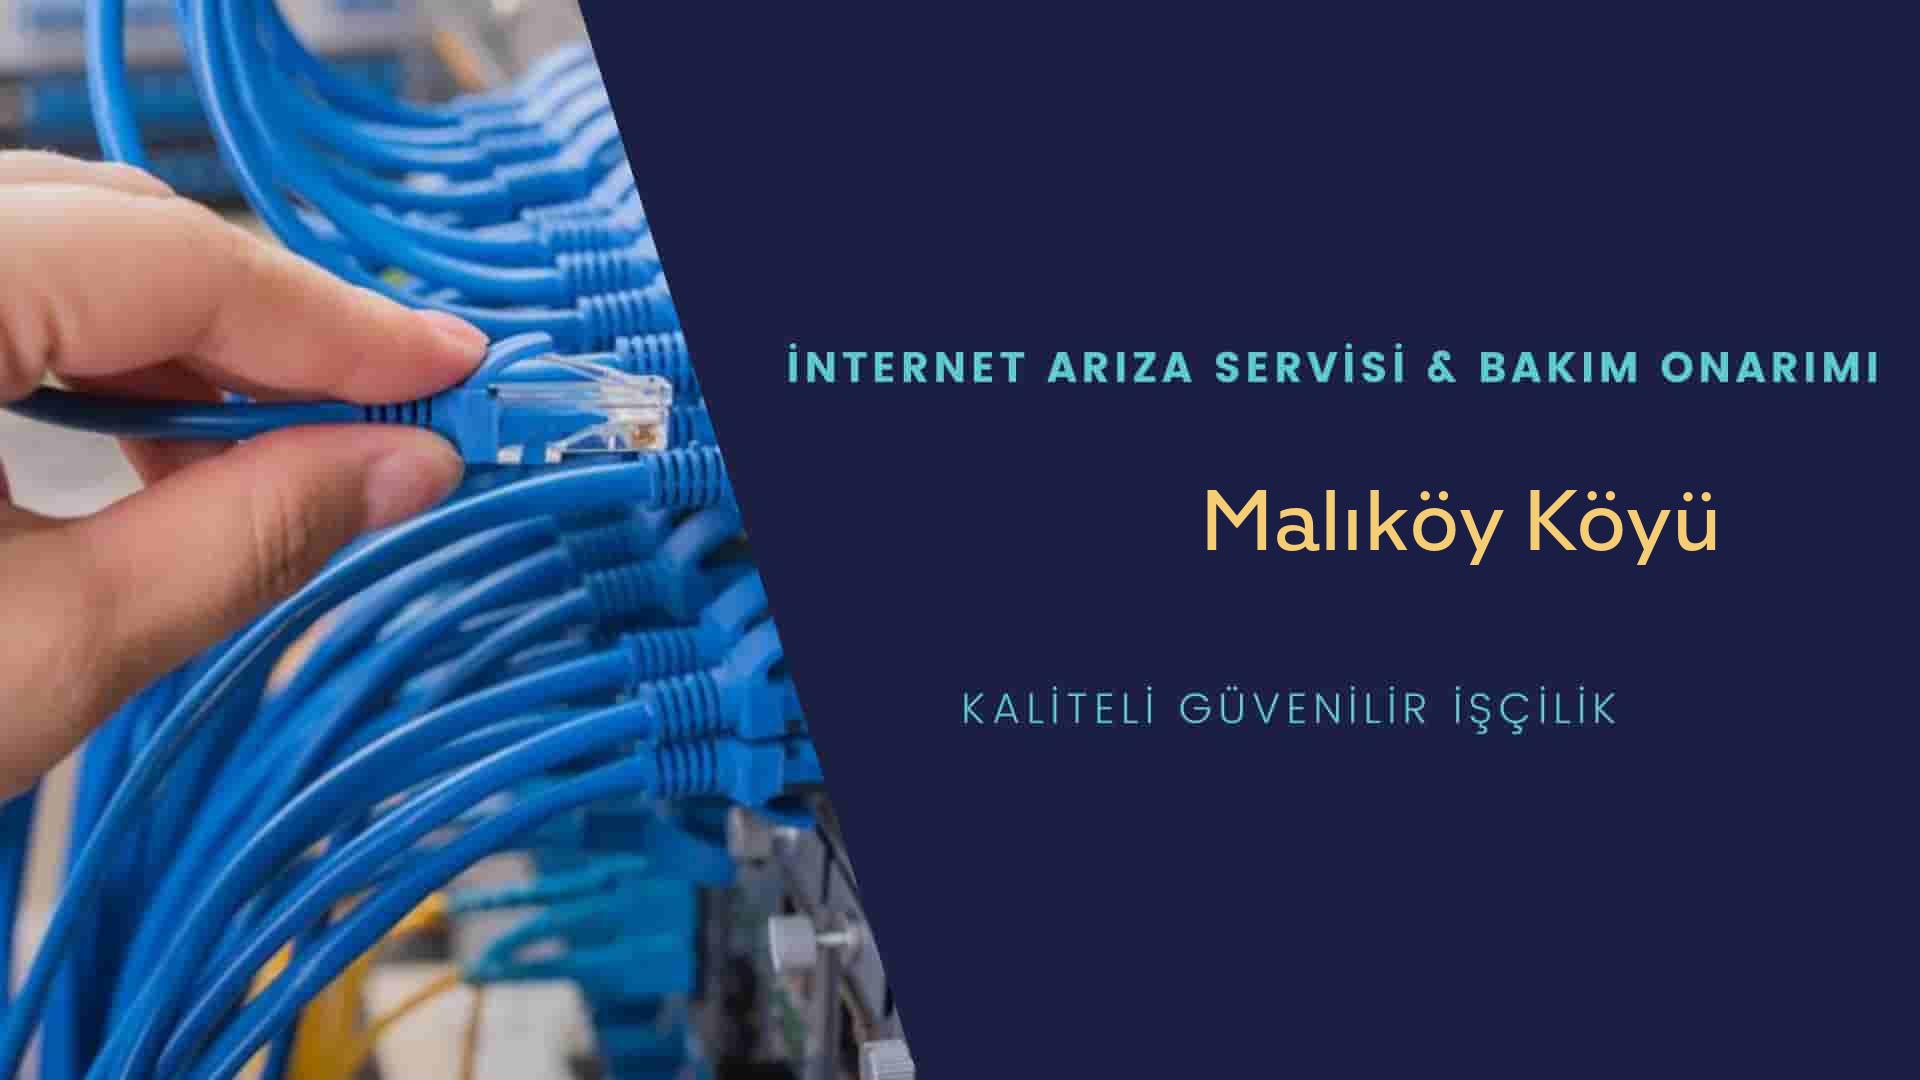 Malıköy Köyü internet kablosu çekimi yapan yerler veya elektrikçiler mi? arıyorsunuz doğru yerdesiniz o zaman sizlere 7/24 yardımcı olacak profesyonel ustalarımız bir telefon kadar yakındır size.